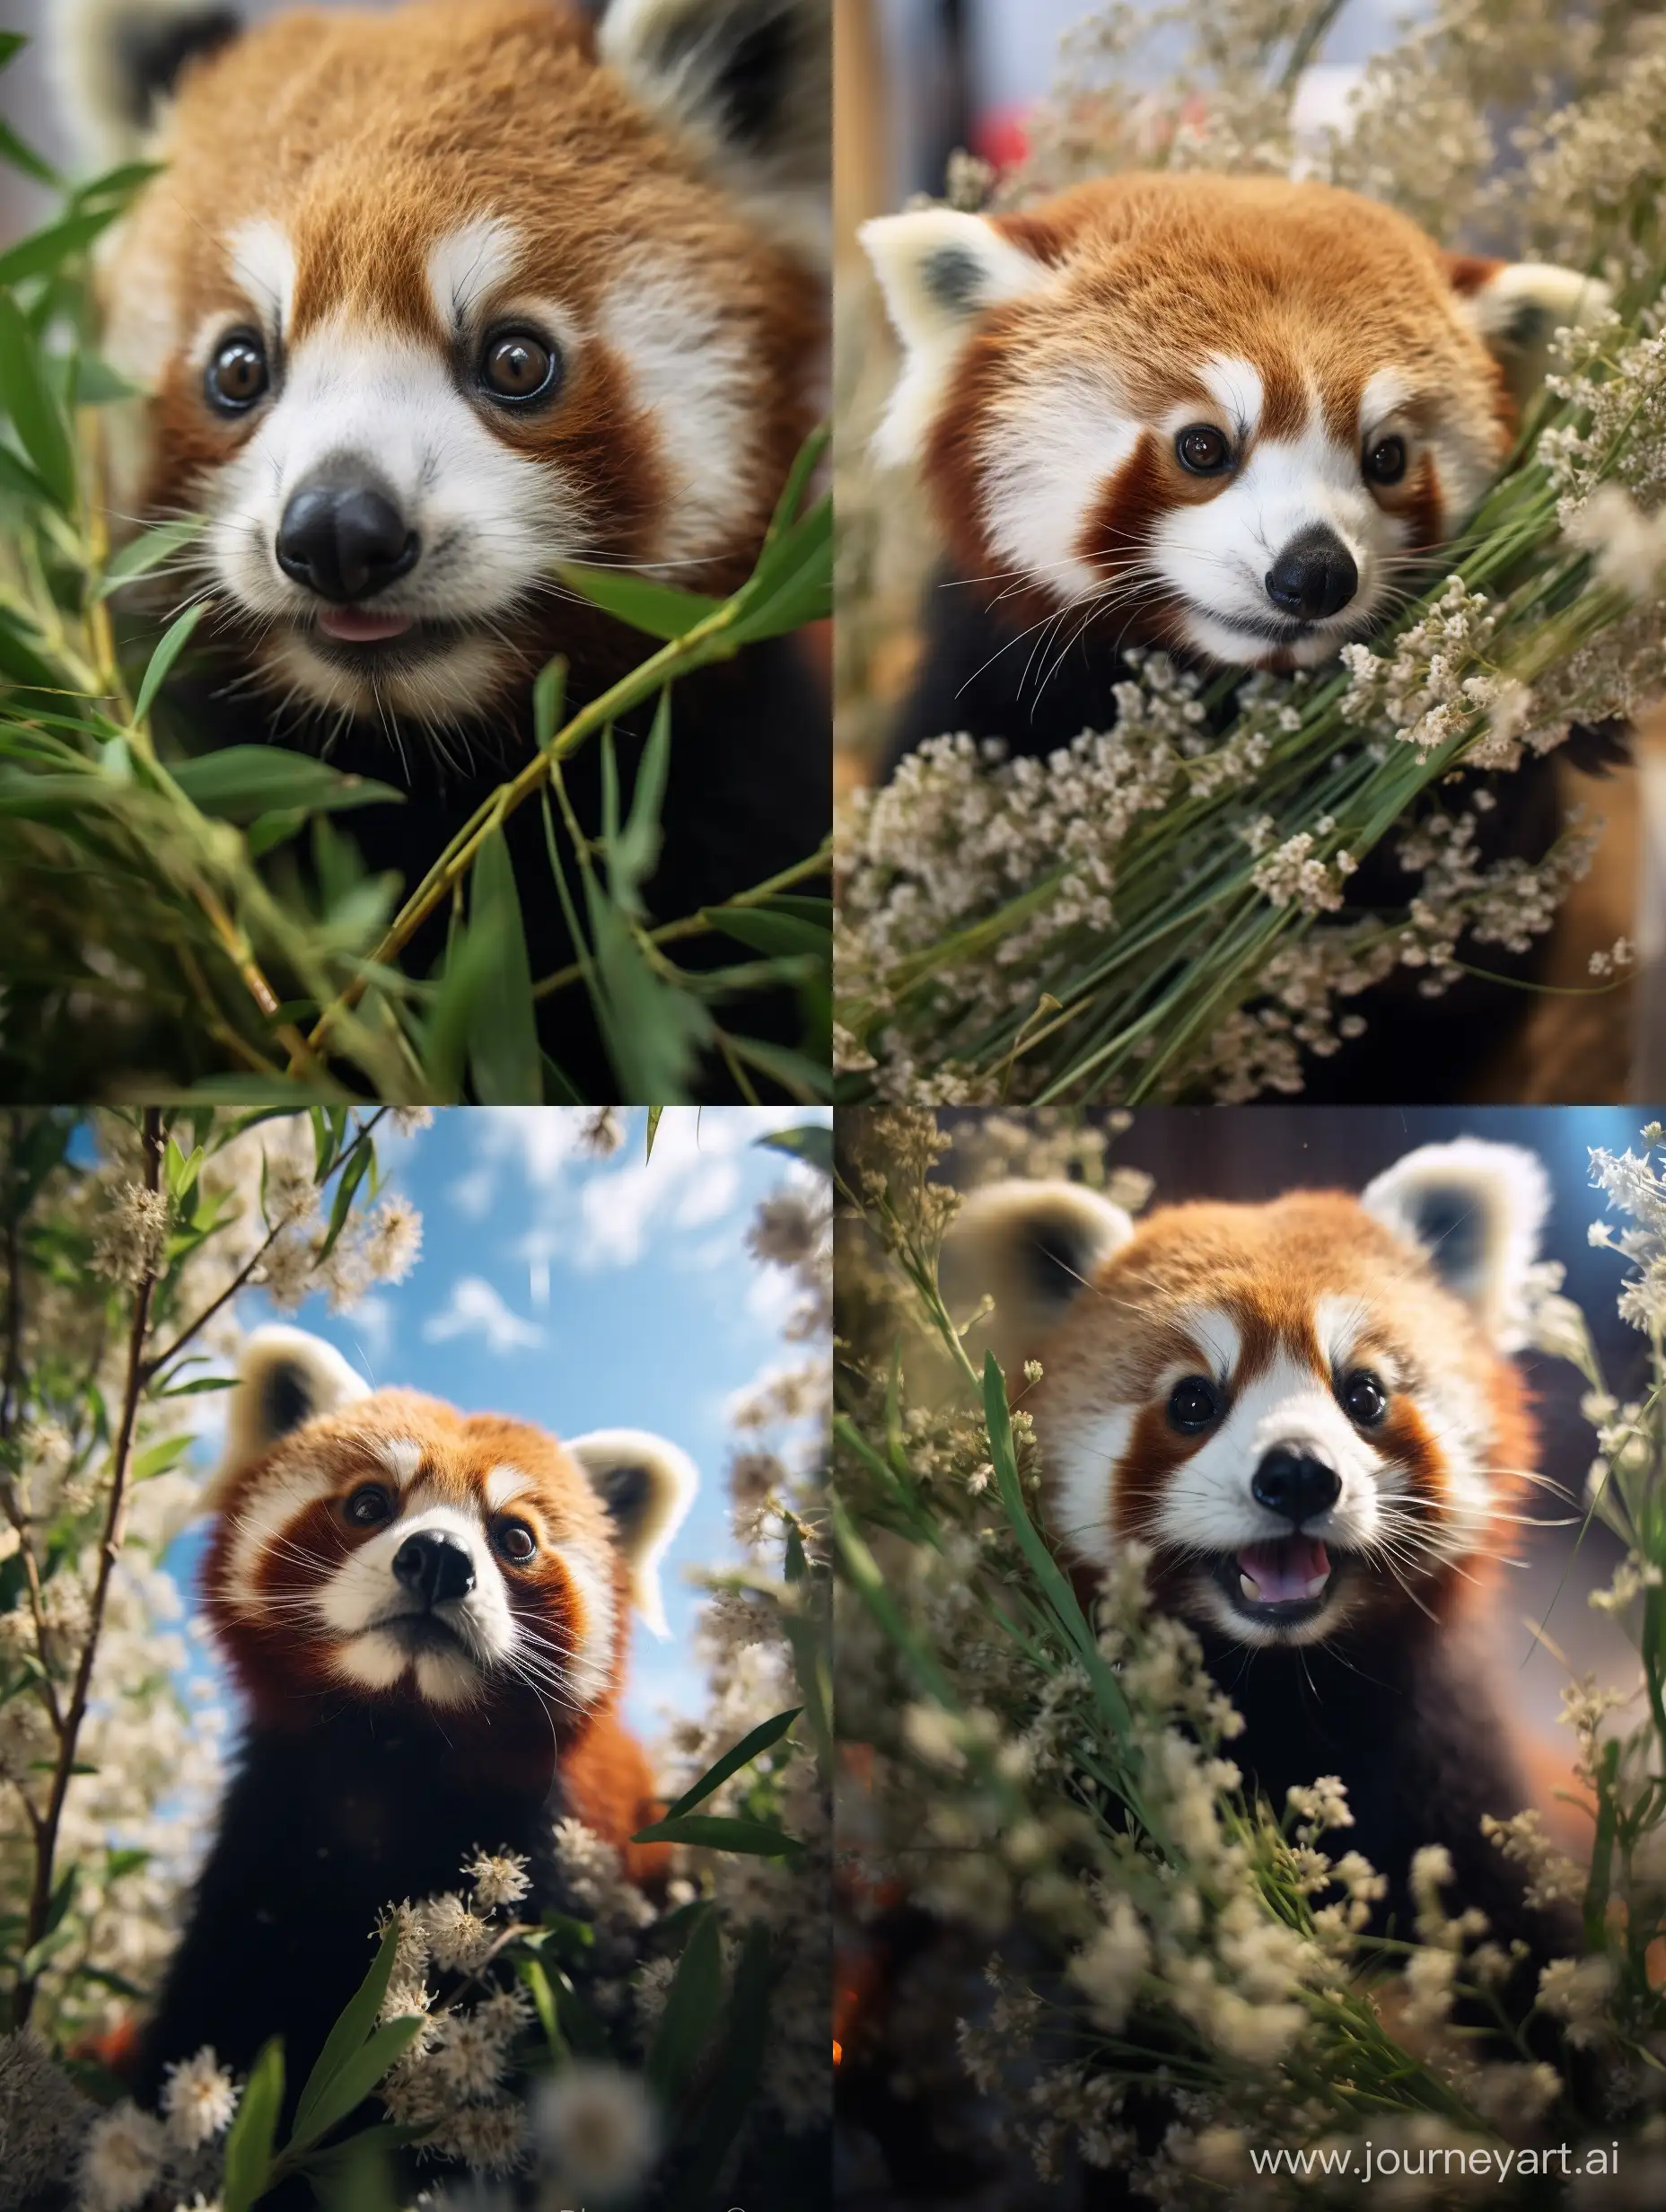 малая панда, professional photo, 15mm,f/2.8,1/500s, iso2000, bottom-up view, среди бамбука, праздничная атмосфера, высокая детализация, крупный план